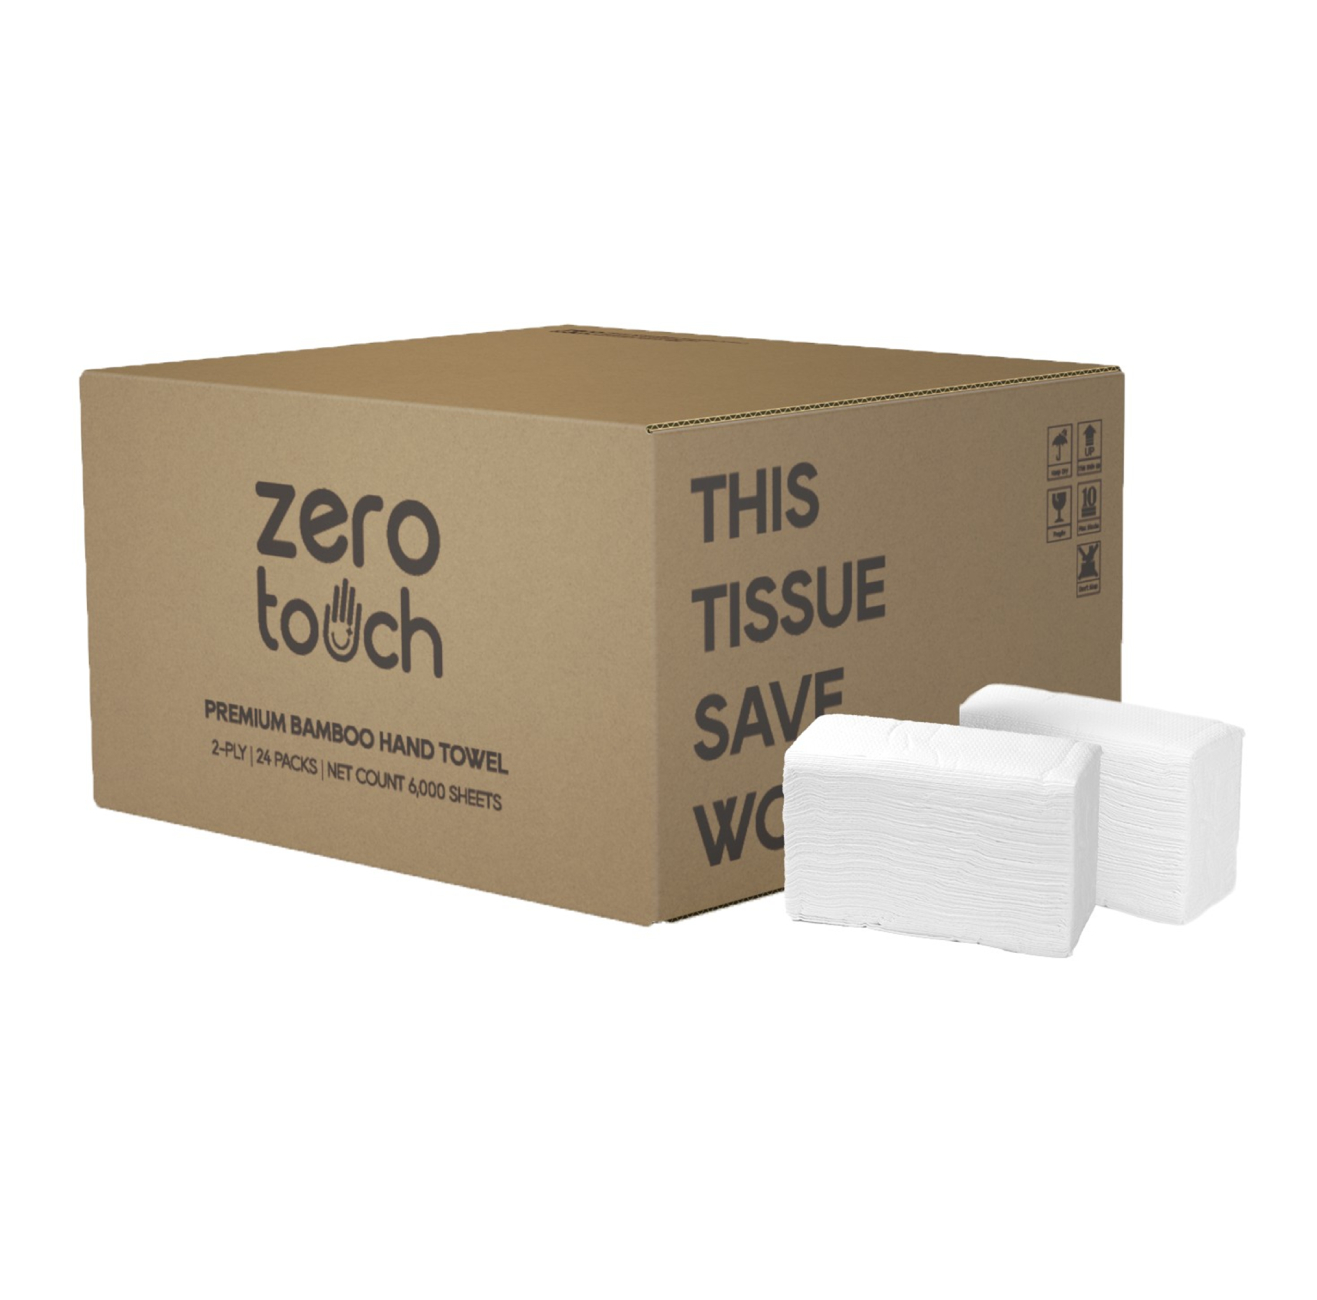 ZERO-TOUCH ทิชชู่เยื่อกระดาษบริสุทธิ์ 100% สำหรับเช็ดมือ (24 ห่อ/ลัง, 250แผ่น/ห่อ)